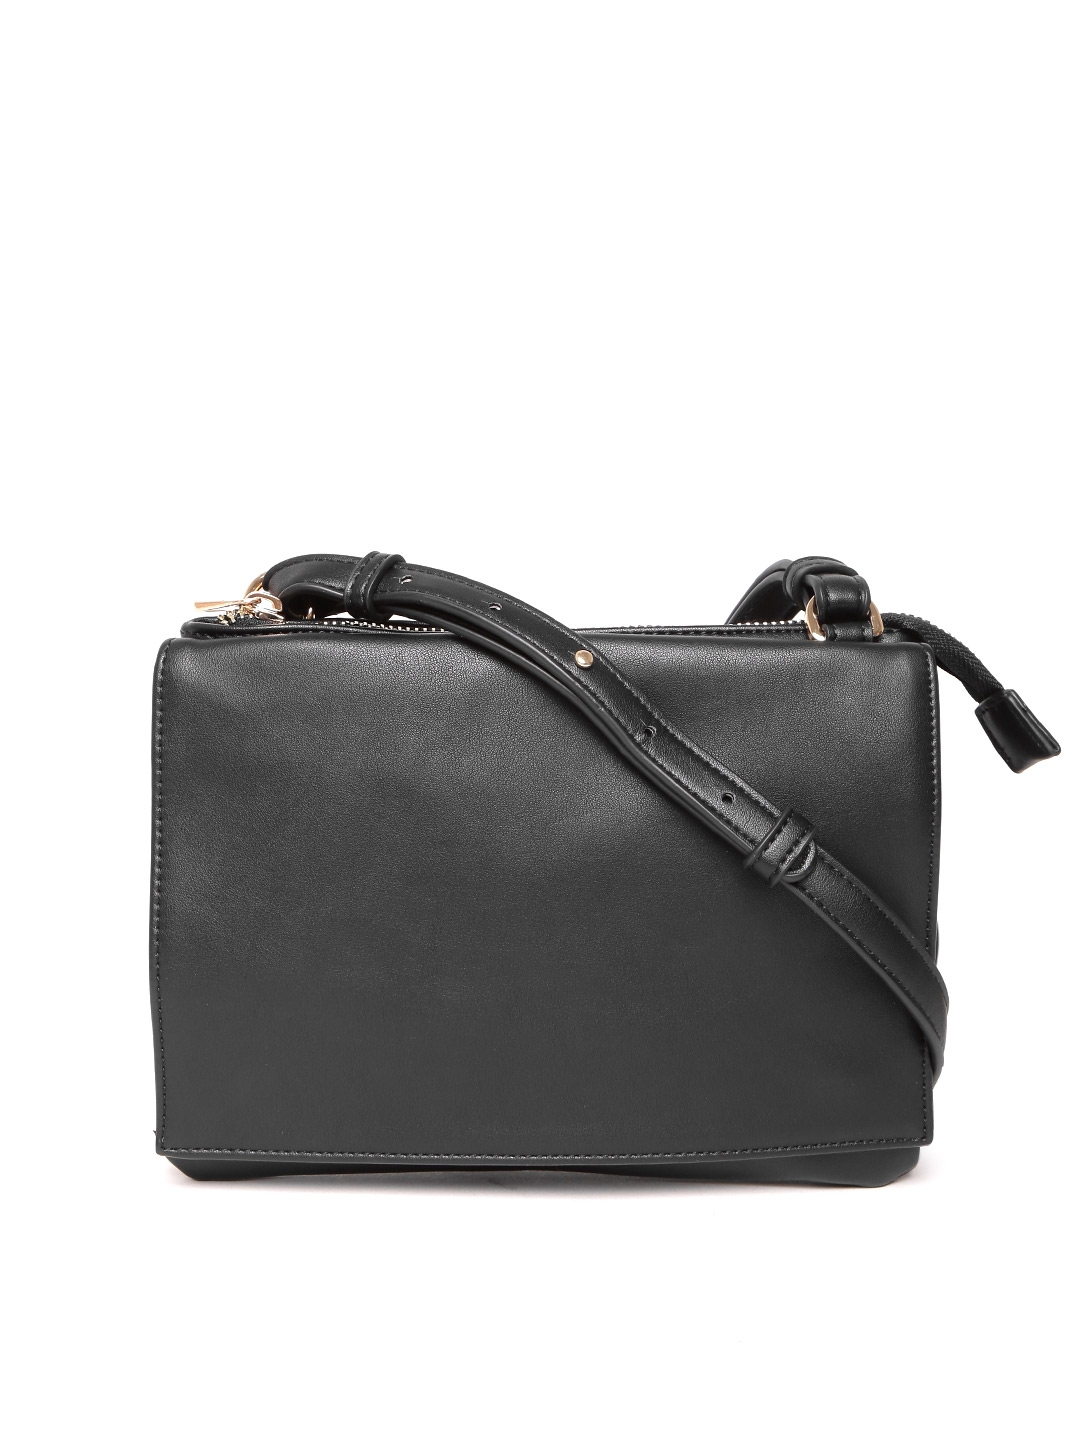 Buy FOREVER 21 Black Solid Sling Bag - Handbags for Women 2369210 | Myntra